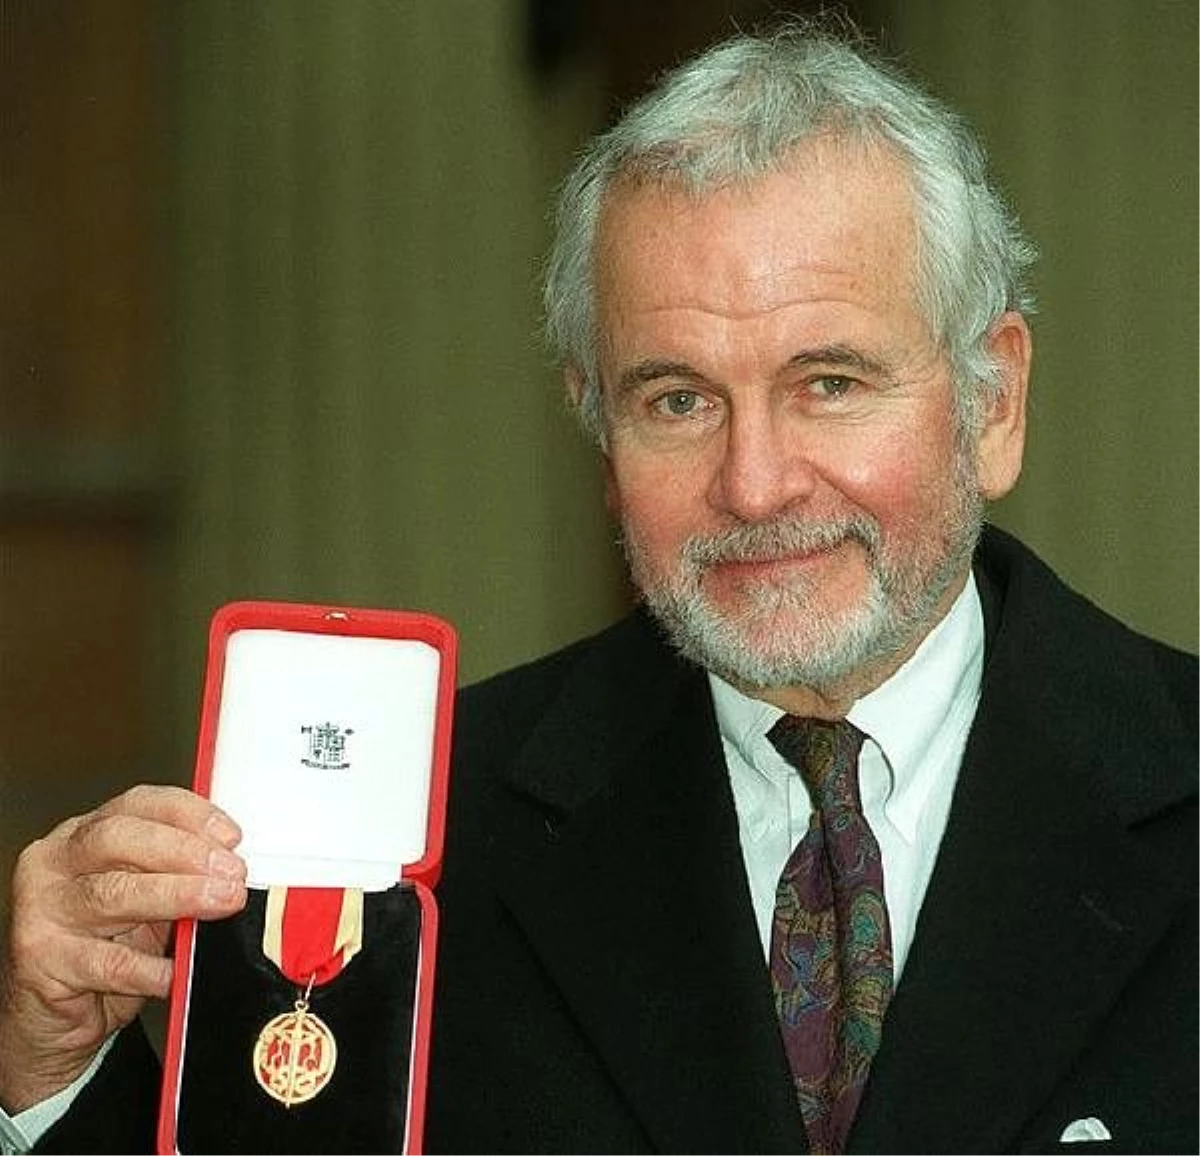 Yüzüklerin Efendisi yıldızı Sir Ian Holm 83 yaşında hayatını kaybetti